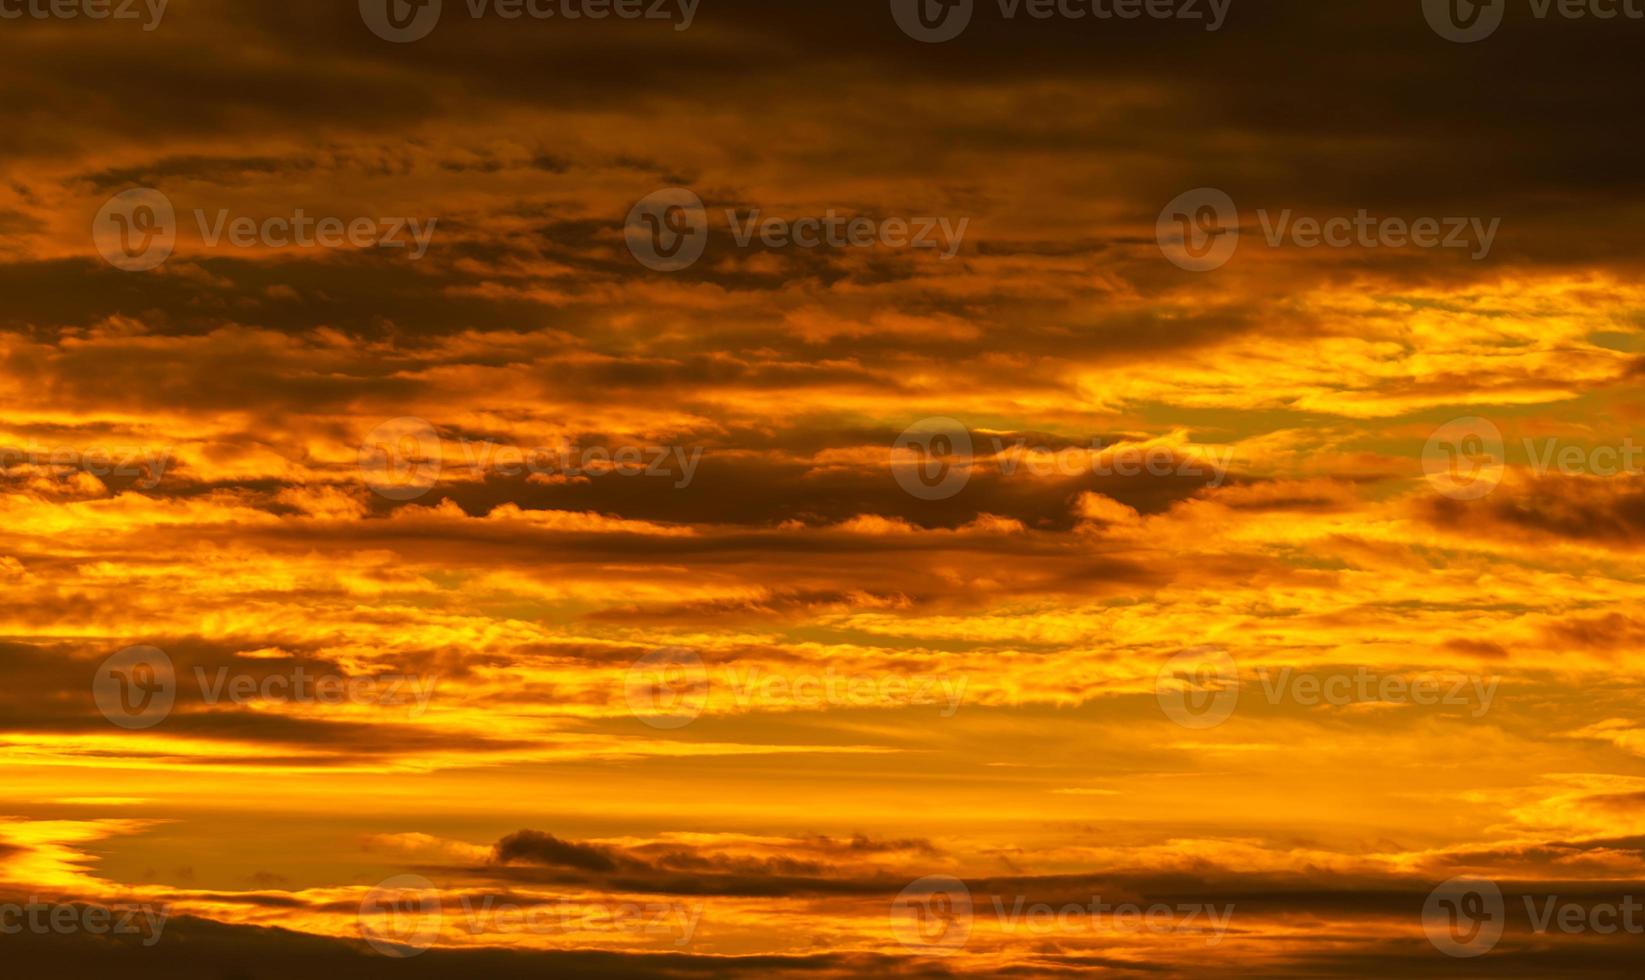 schöner sonnenuntergangshimmel. goldener sonnenunterganghimmel mit schönem wolkenmuster. orange, gelbe und dunkle Wolken am Abend. Freiheit und ruhiger Hintergrund. Schönheit in der Natur. kraftvolle und spirituelle Szene. foto